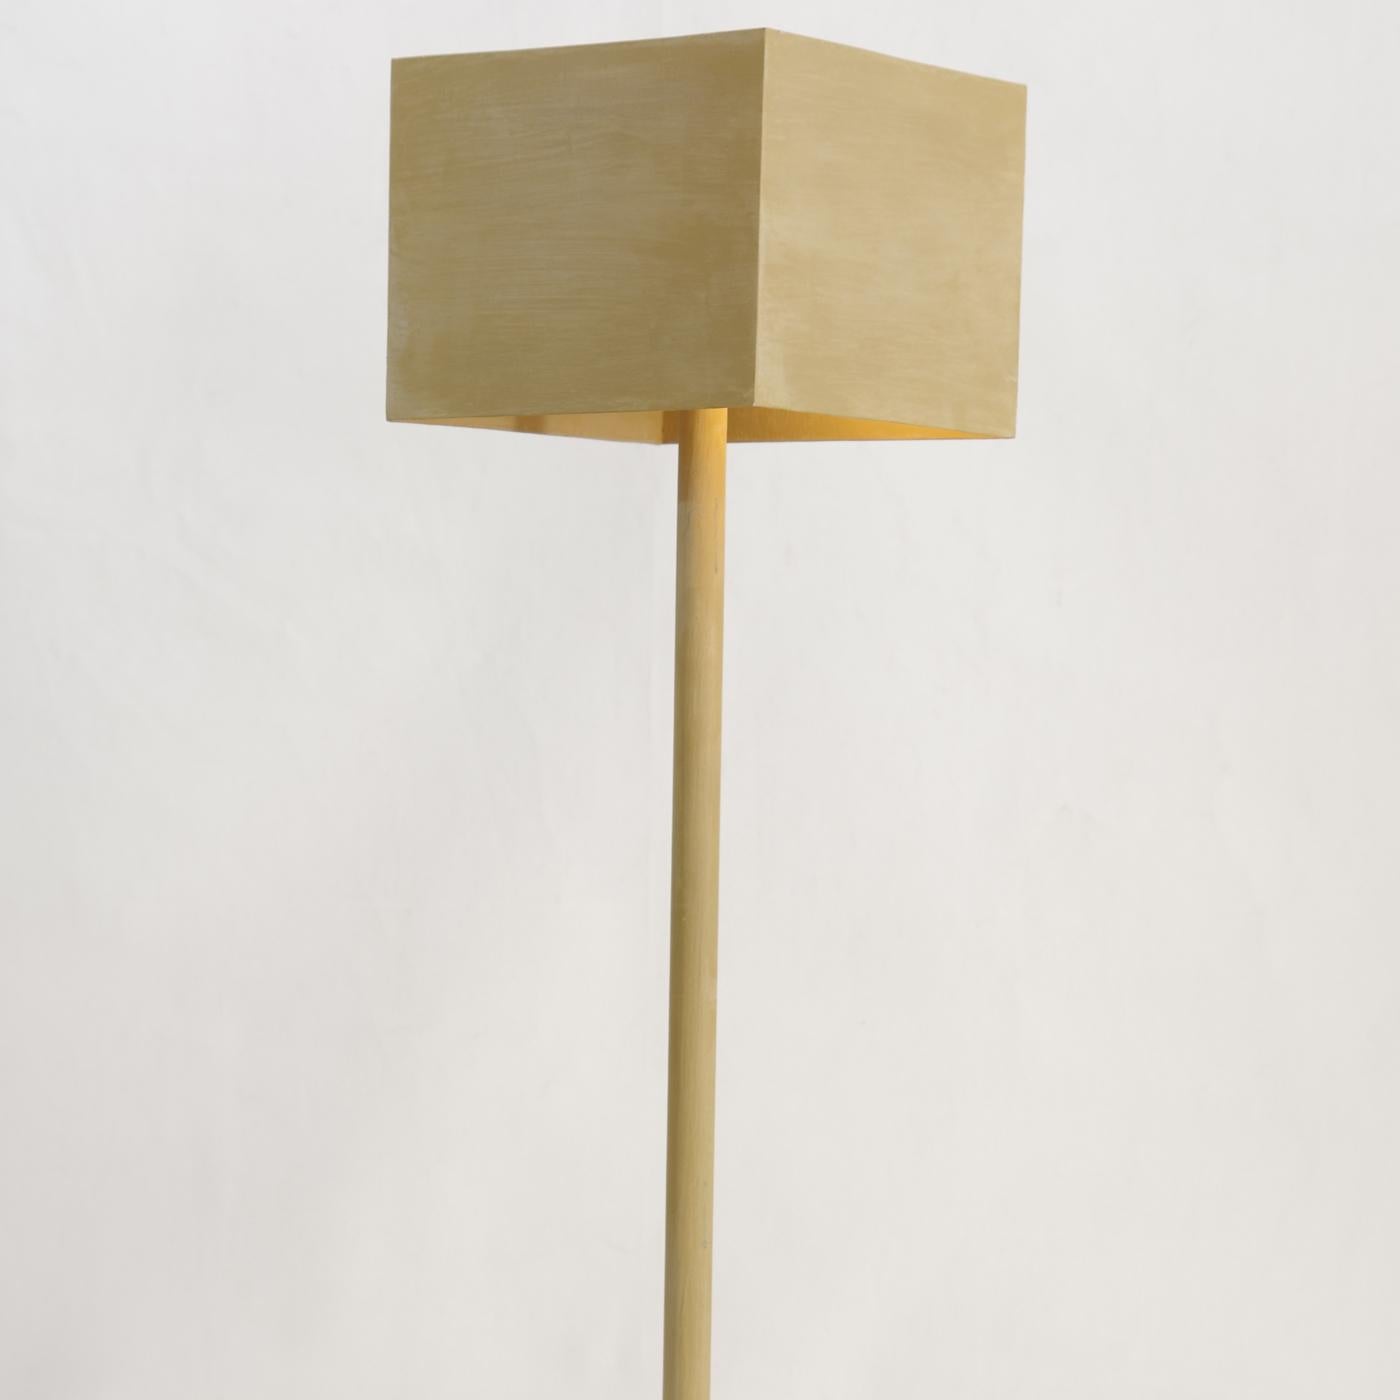 Italian Ratio 1 Table Lamp by Giorgio Cubeddu